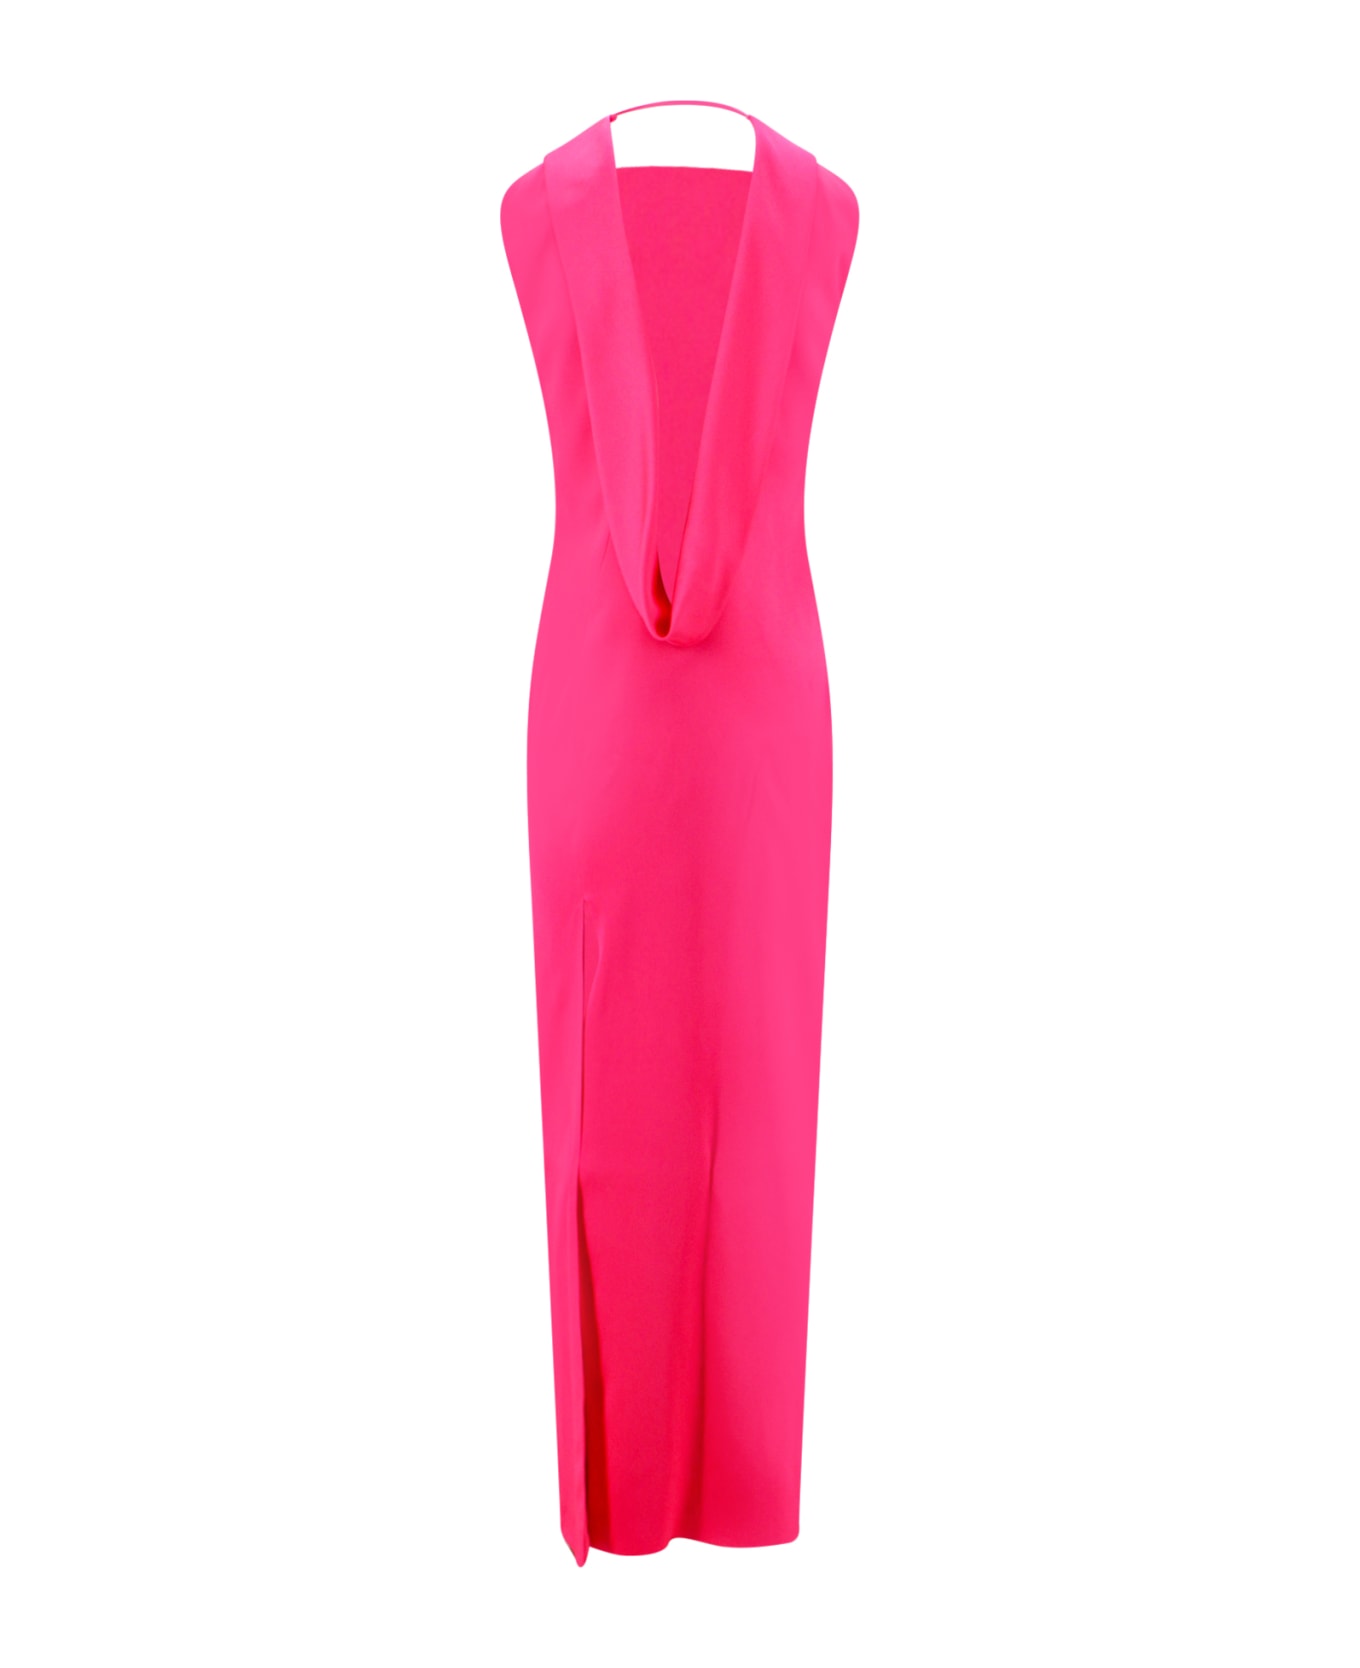 Versace Dress - PINK